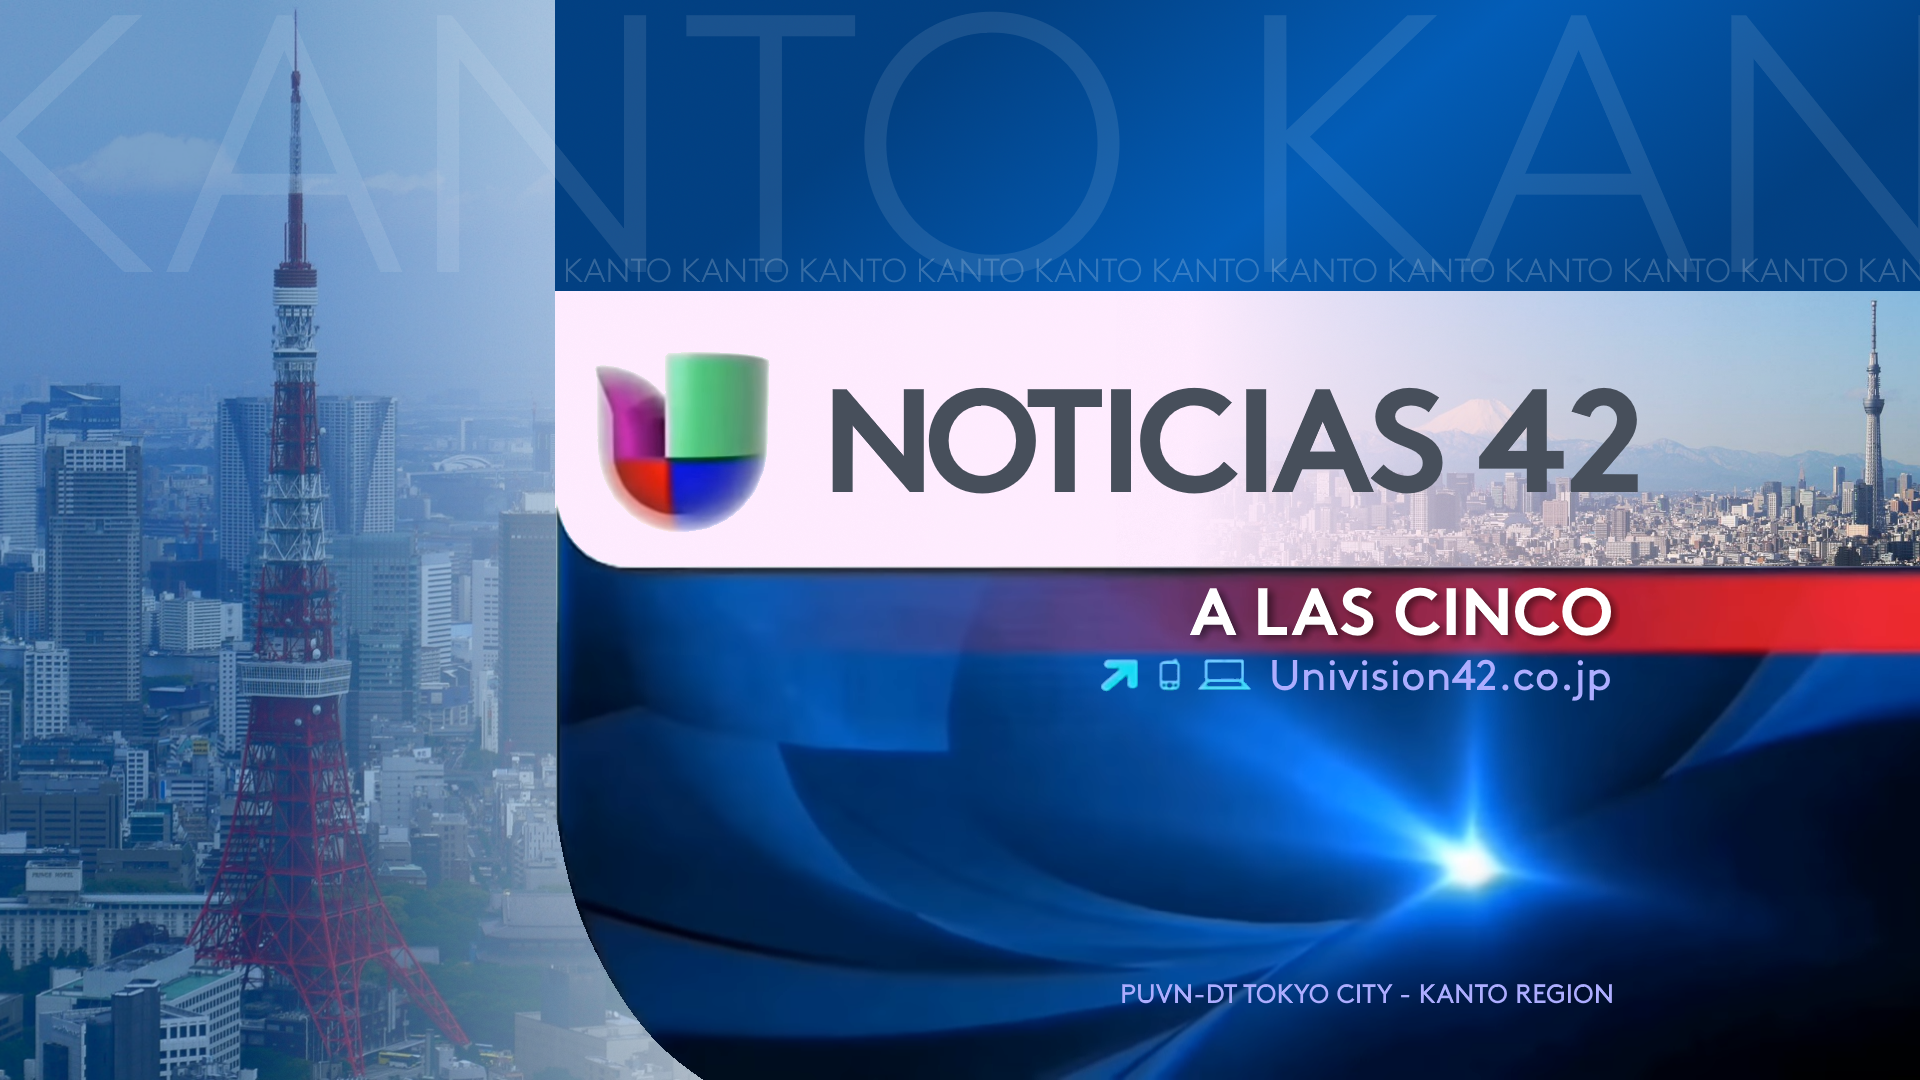 Image Noticias Univision 42 A Las Cinco (2013) (1).png